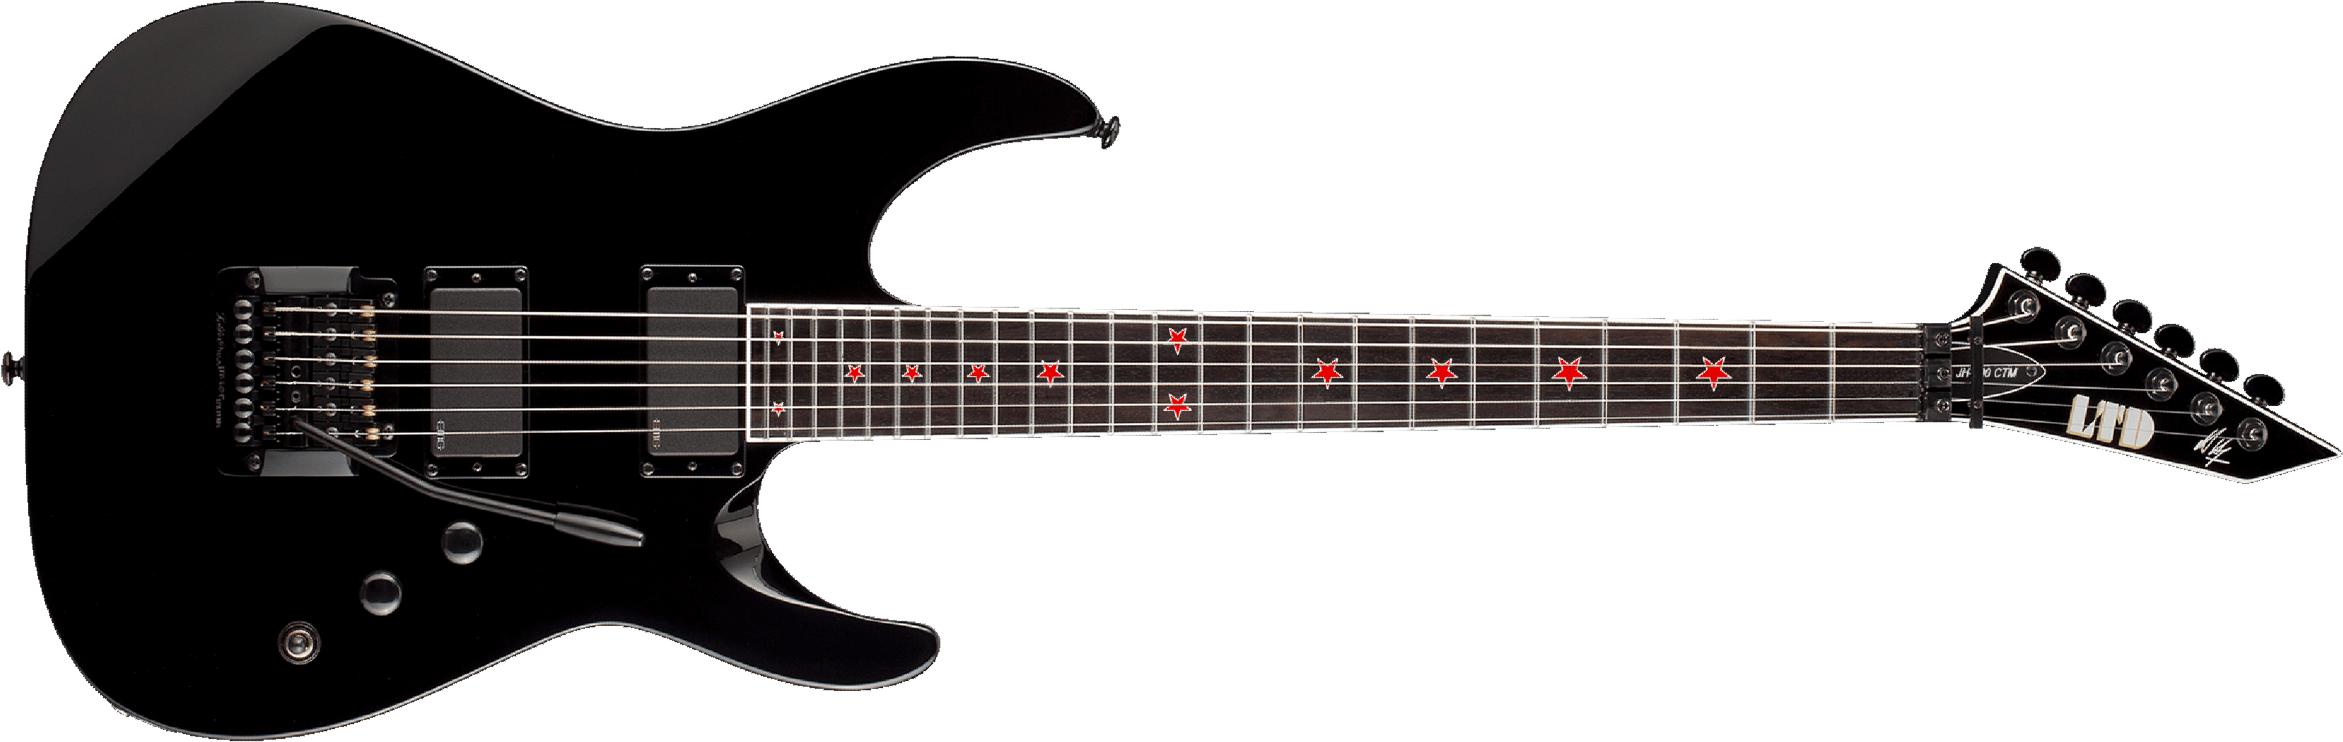 Ltd Jeff Hanneman Jh-600 Signature Hh Emg Khaler Eb - Black - Guitarra eléctrica con forma de str. - Main picture